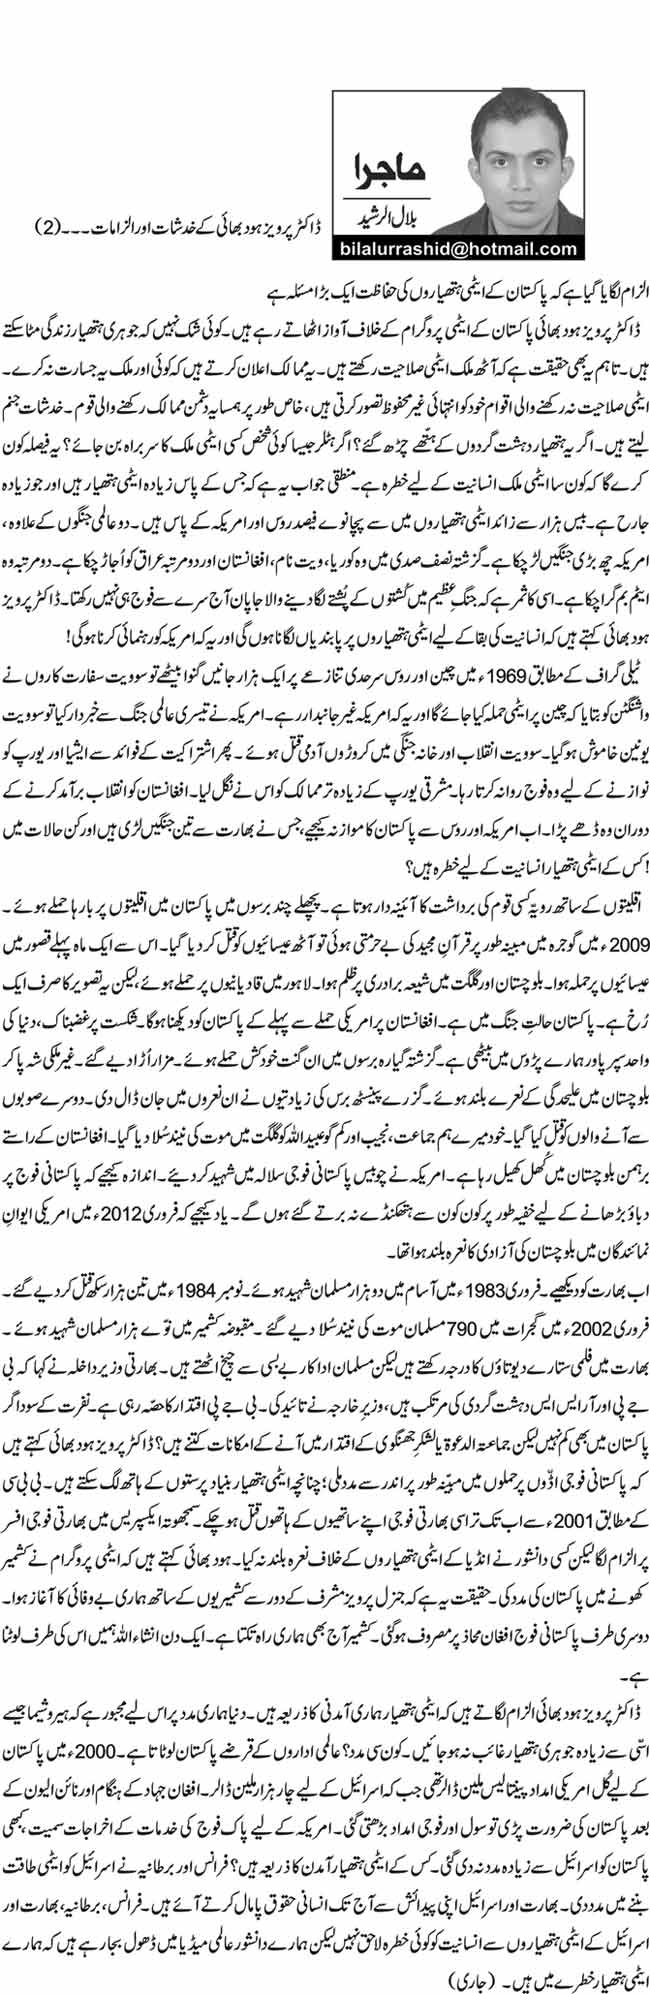 ڈاکٹر پرویز ہود بھائی کے خدشات اور الزامات  